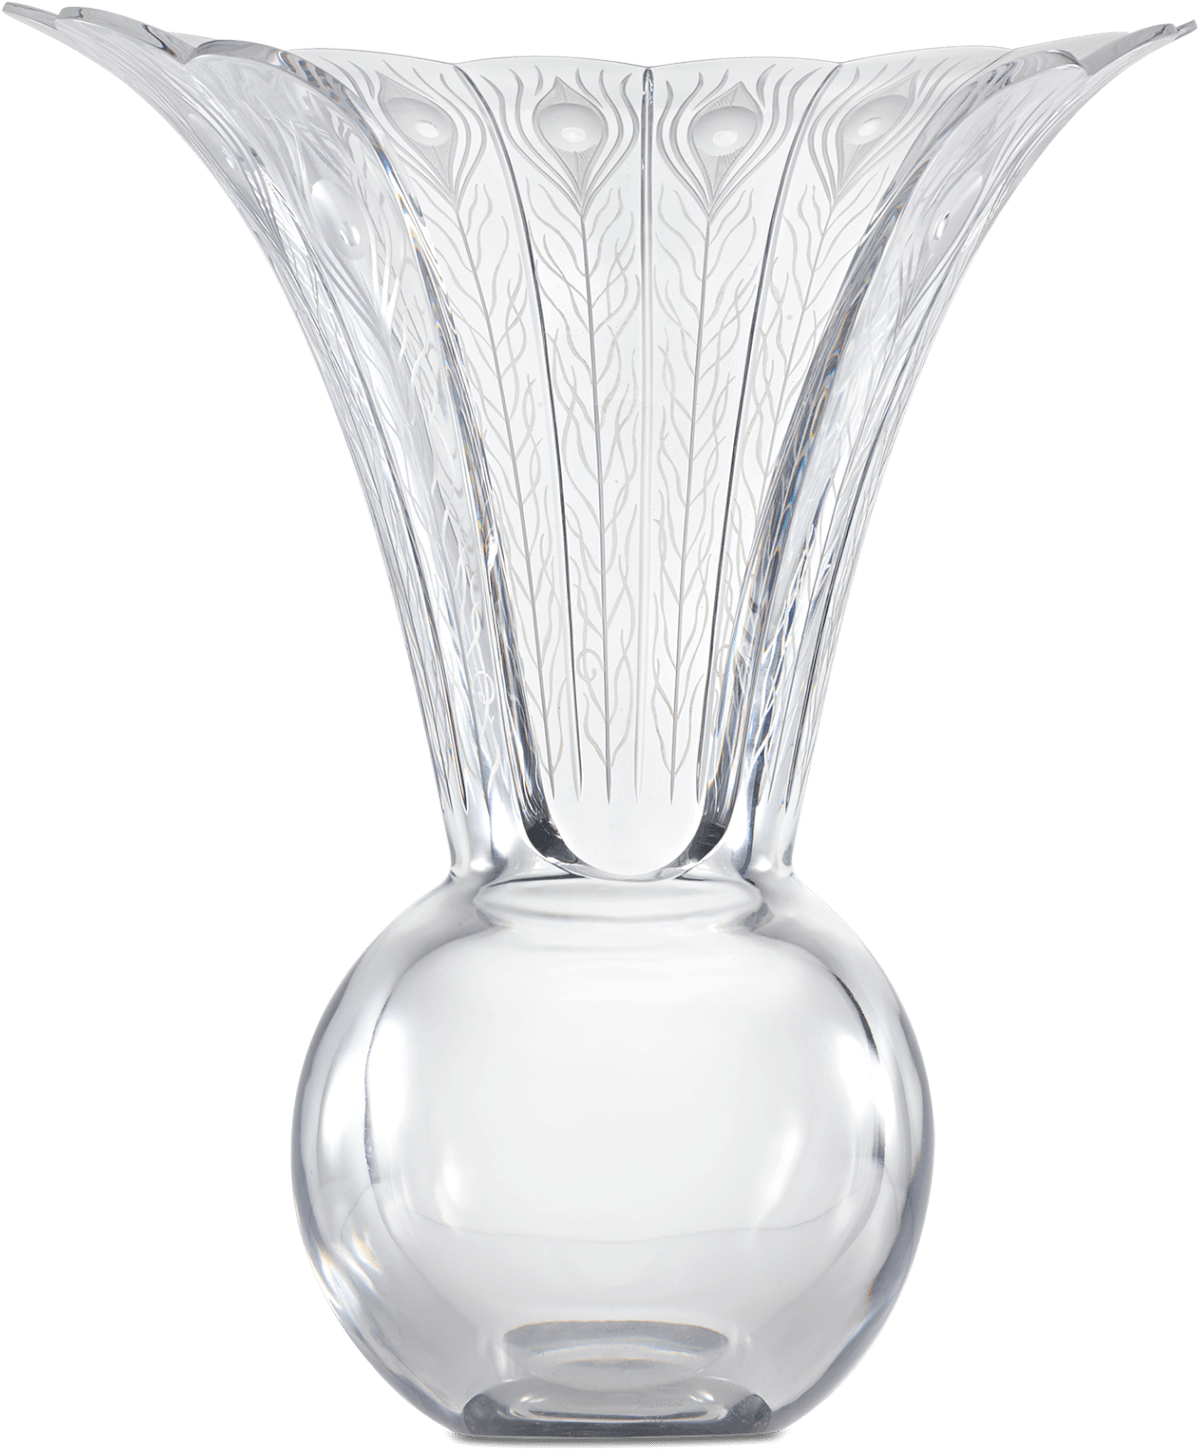 Baccarat Crystal Peacock Vase - Vase, Hd Png Download